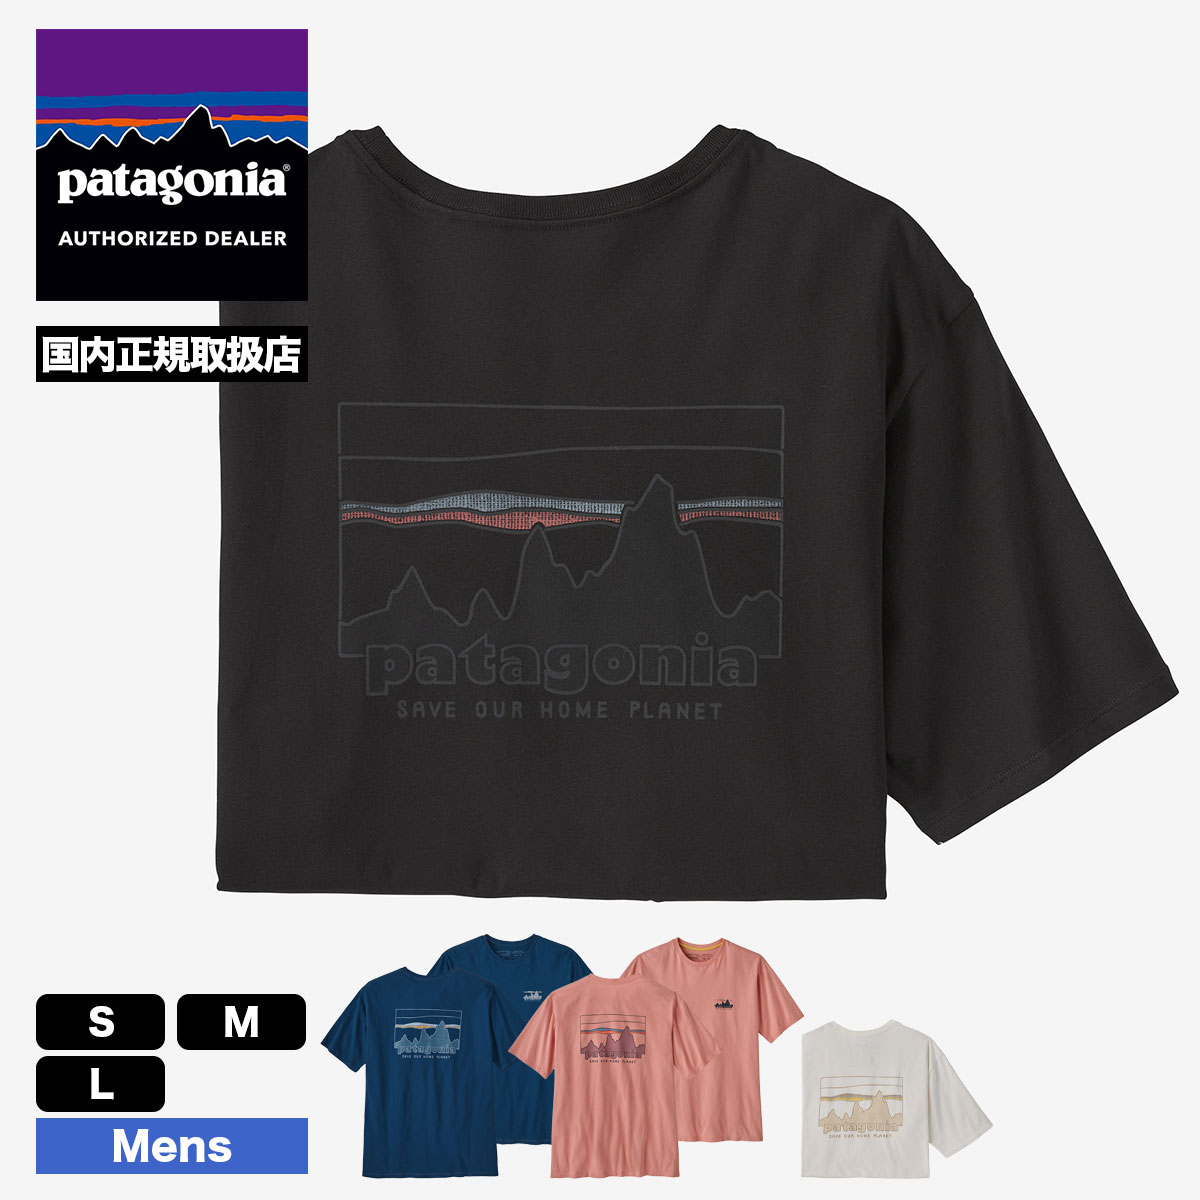 【10%OFF サマーセール 】パタゴニア Tシャツ 半袖 メンズ・'73 スカイライン・オーガニック・Tシャツ ロゴ シンプル 全4色 普段着  おしゃれ 人気 ブランド patagonia 通販【37534】 -ジャックオーシャンスポーツ